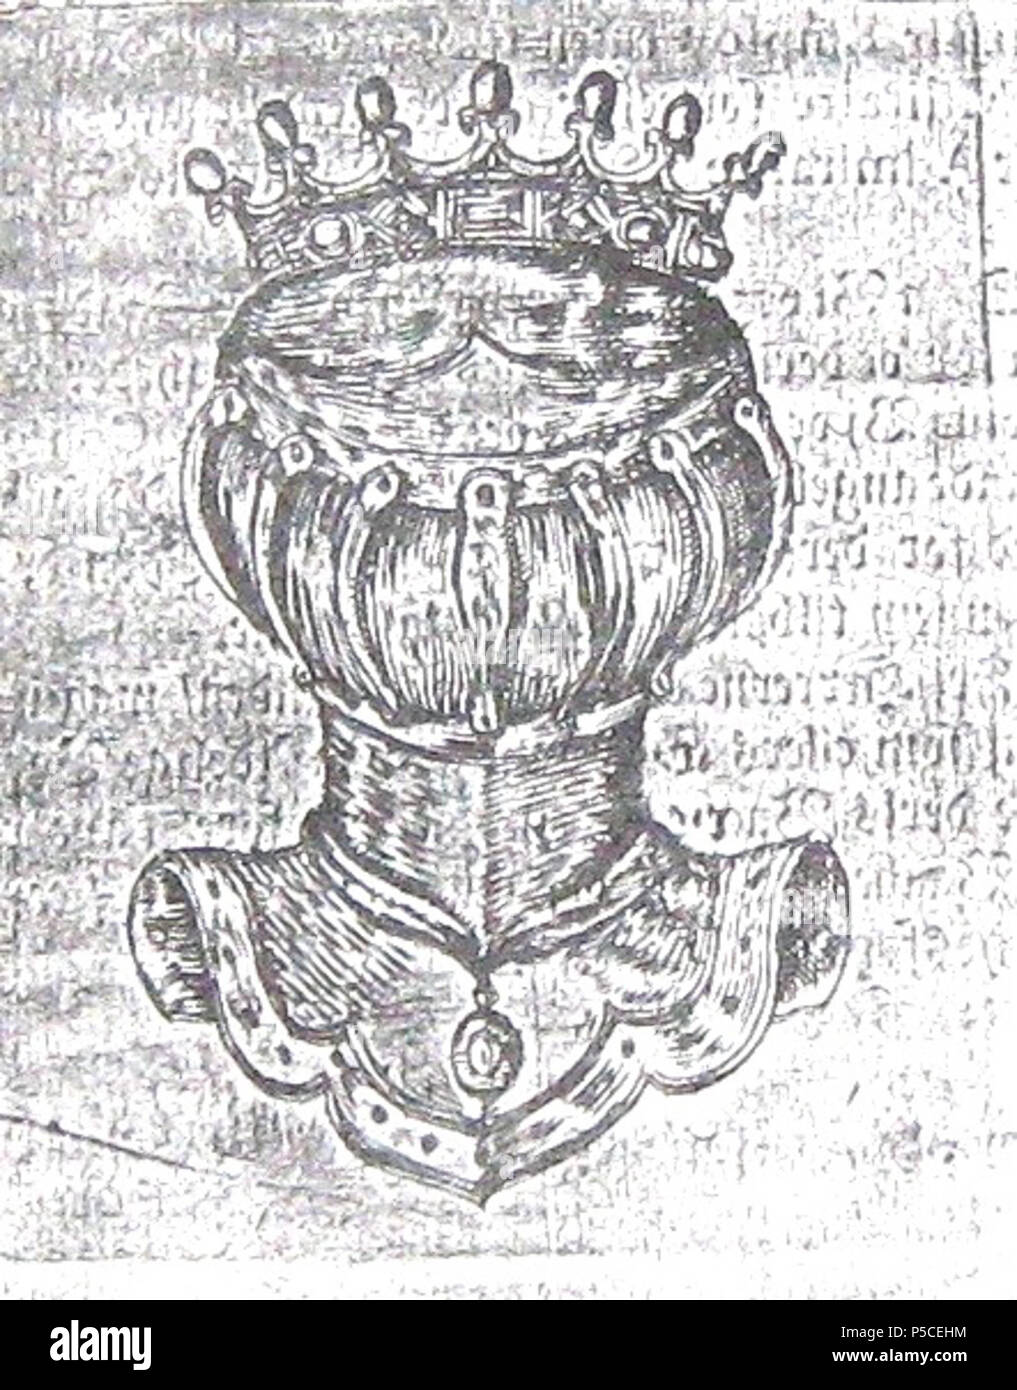 N/A. English : barre Dano-norvégienne et couronne des barons. 25 mai 1671. Gouvernement danois 412 Baron Dano-norvégienne Helm Coronet Banque D'Images